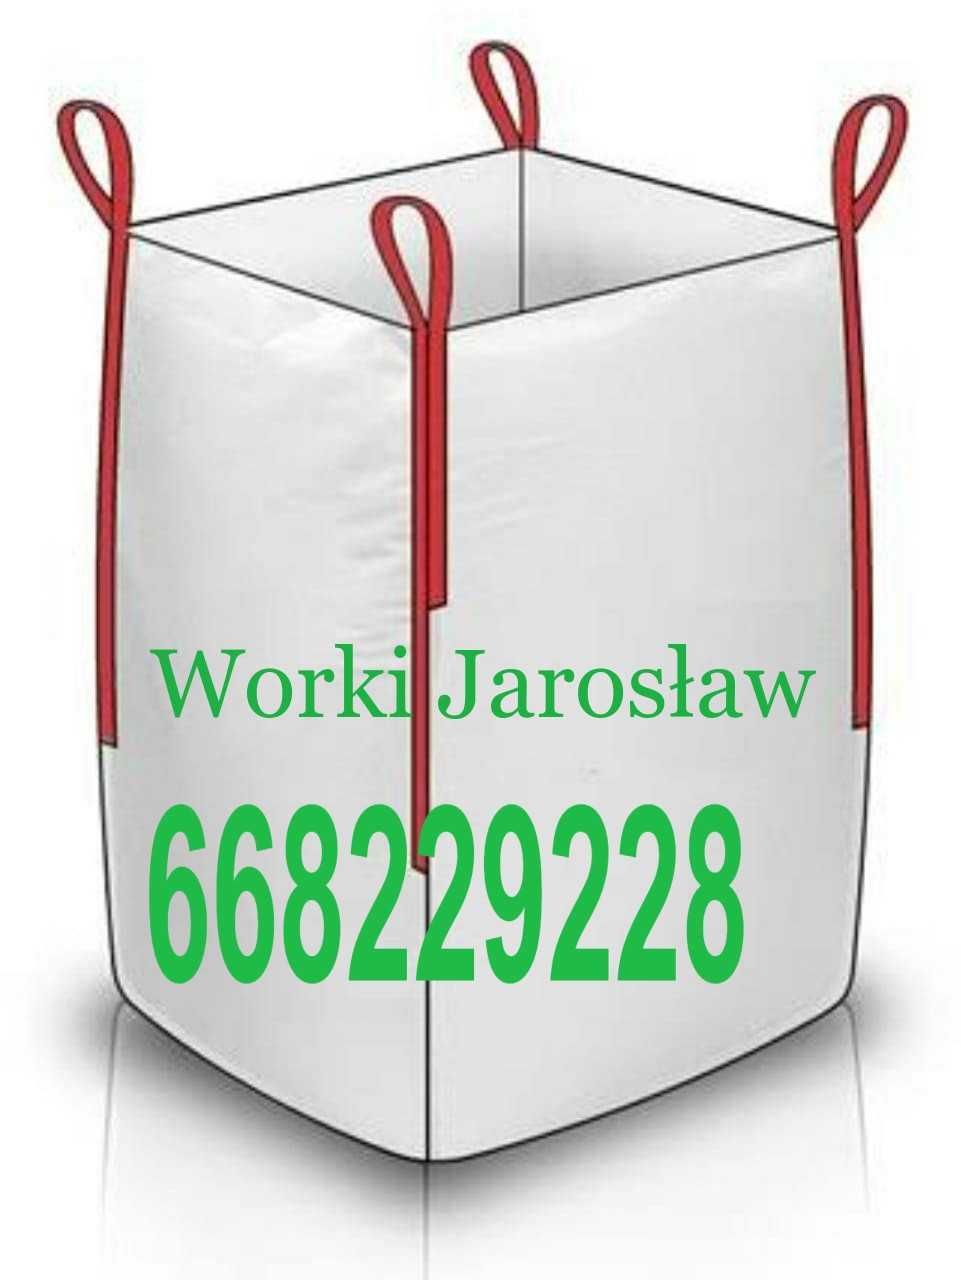 Worki Big Bag - dostępne w wersji 1000 kg i 500 kg Bagi Jarosław